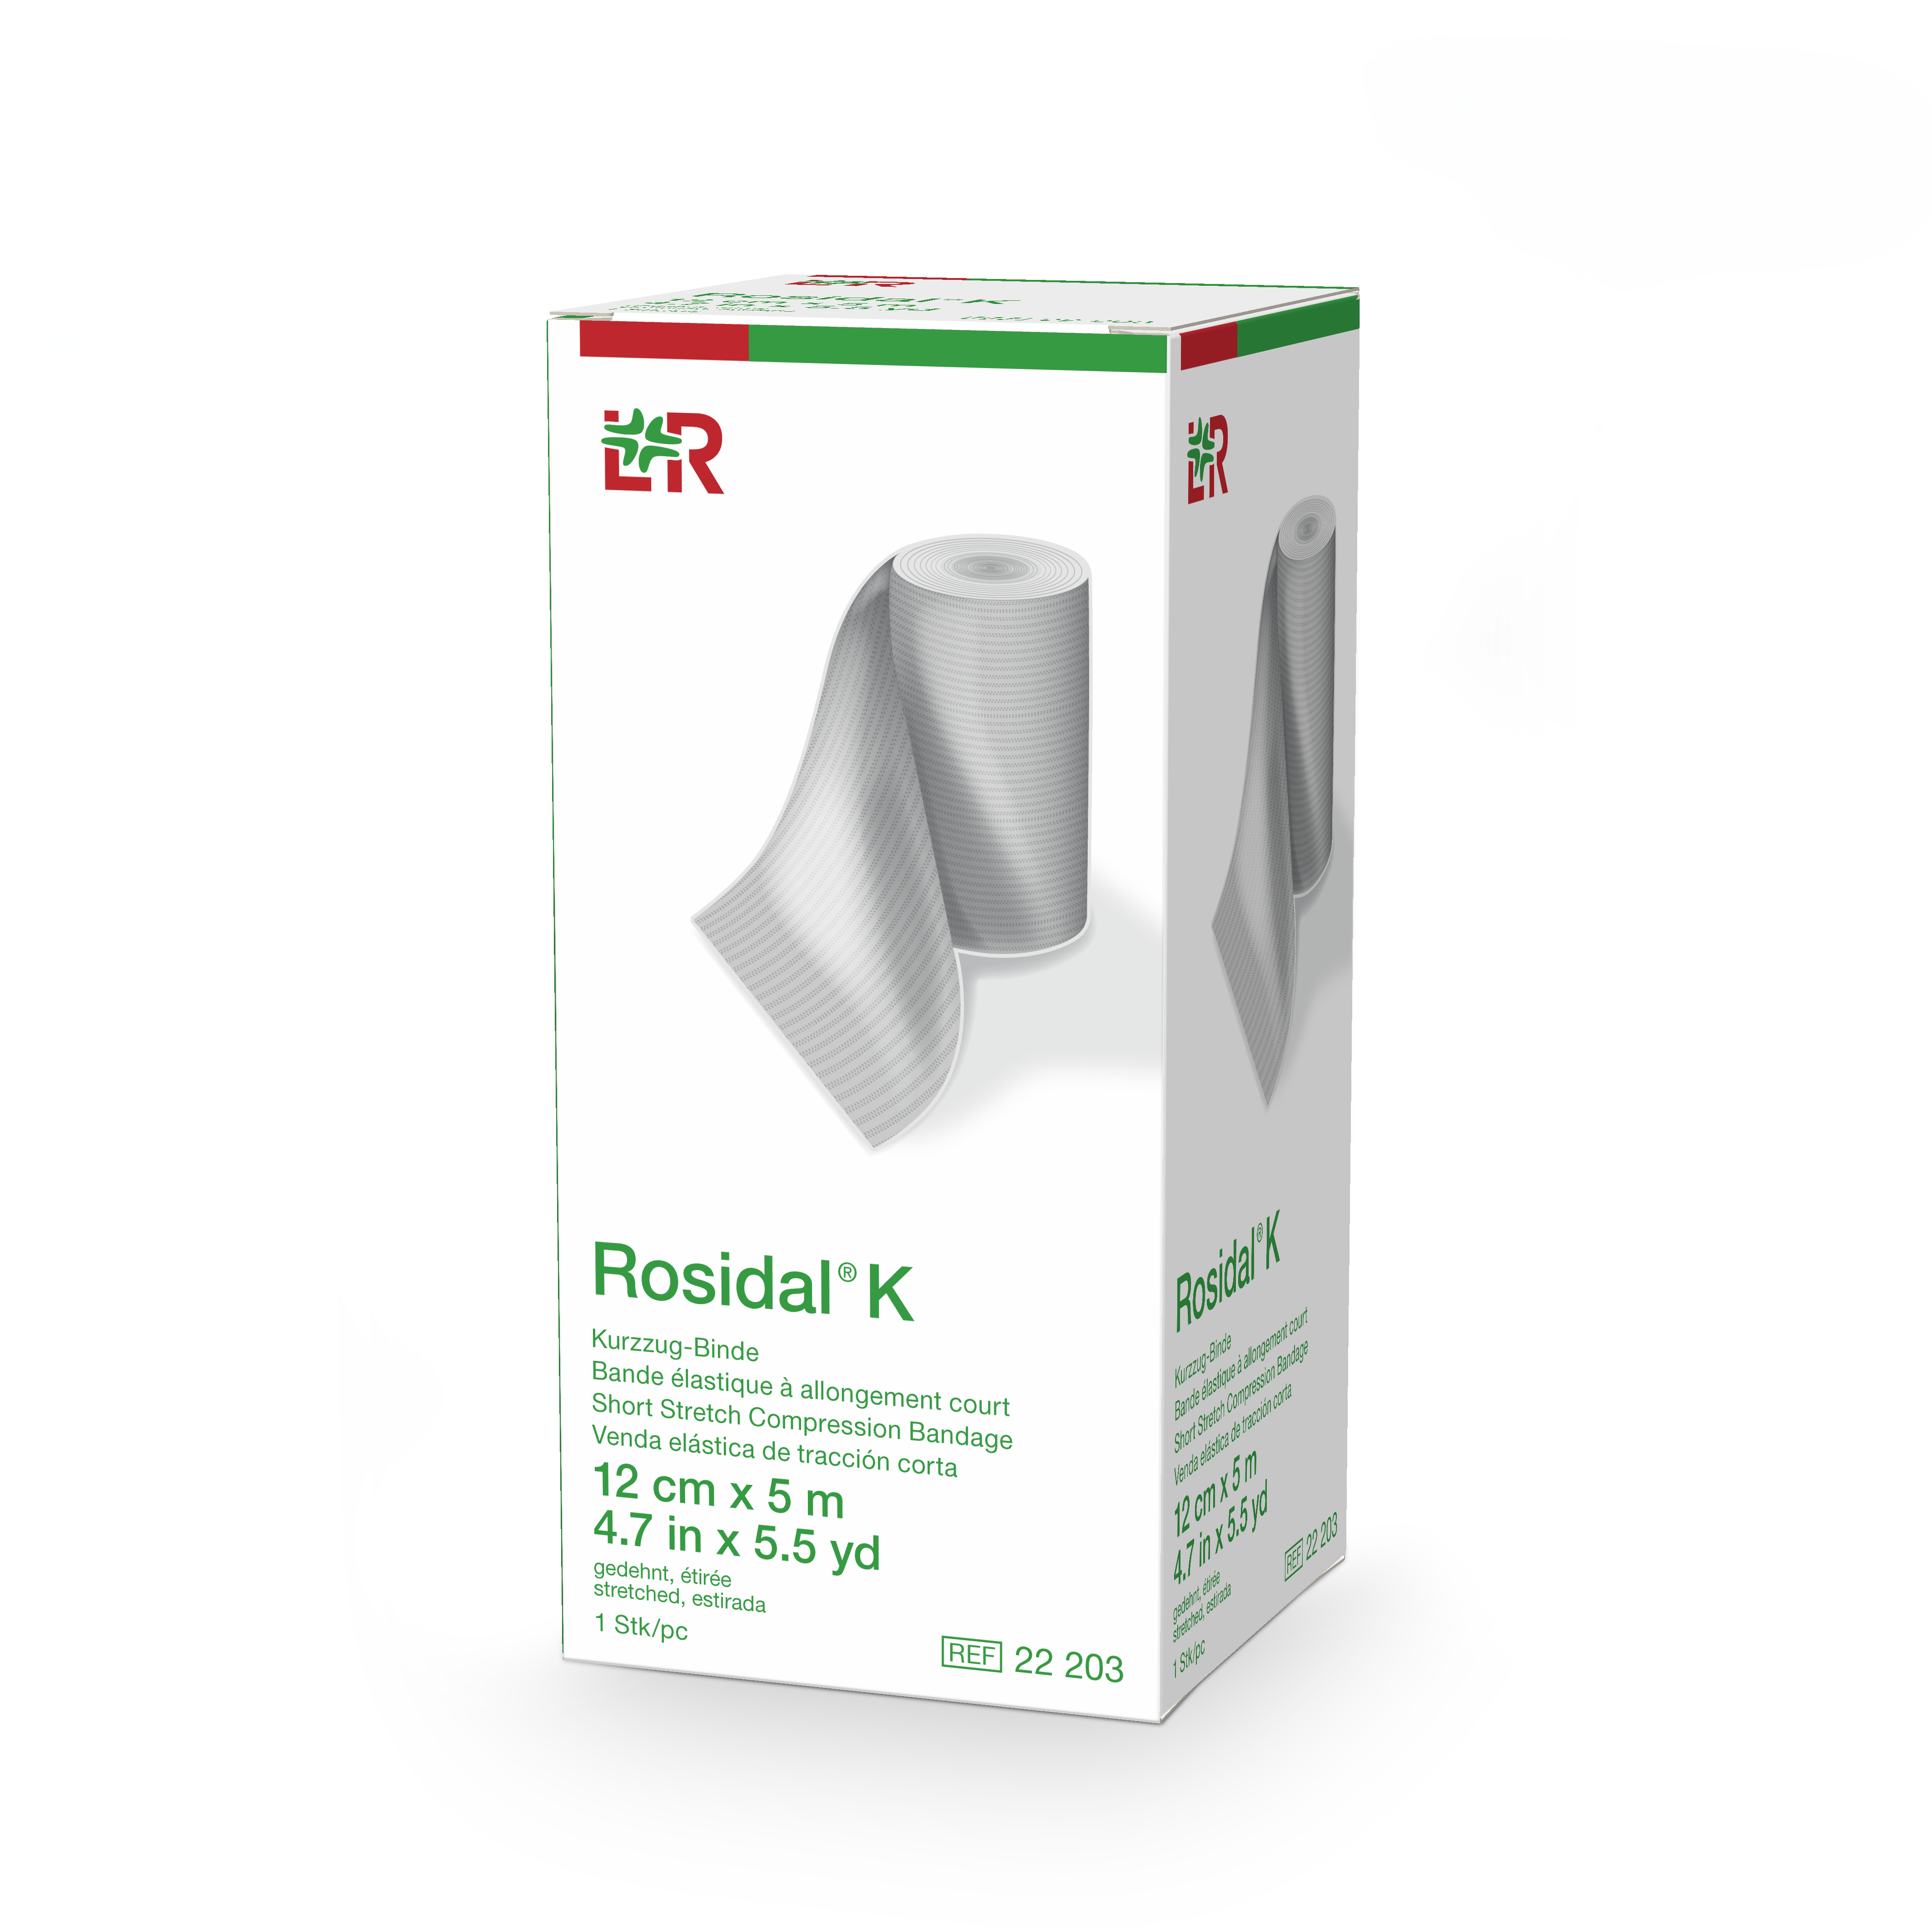 Rosidal® K - bande à allongement court - 12 cm x 5 m - 1 pc